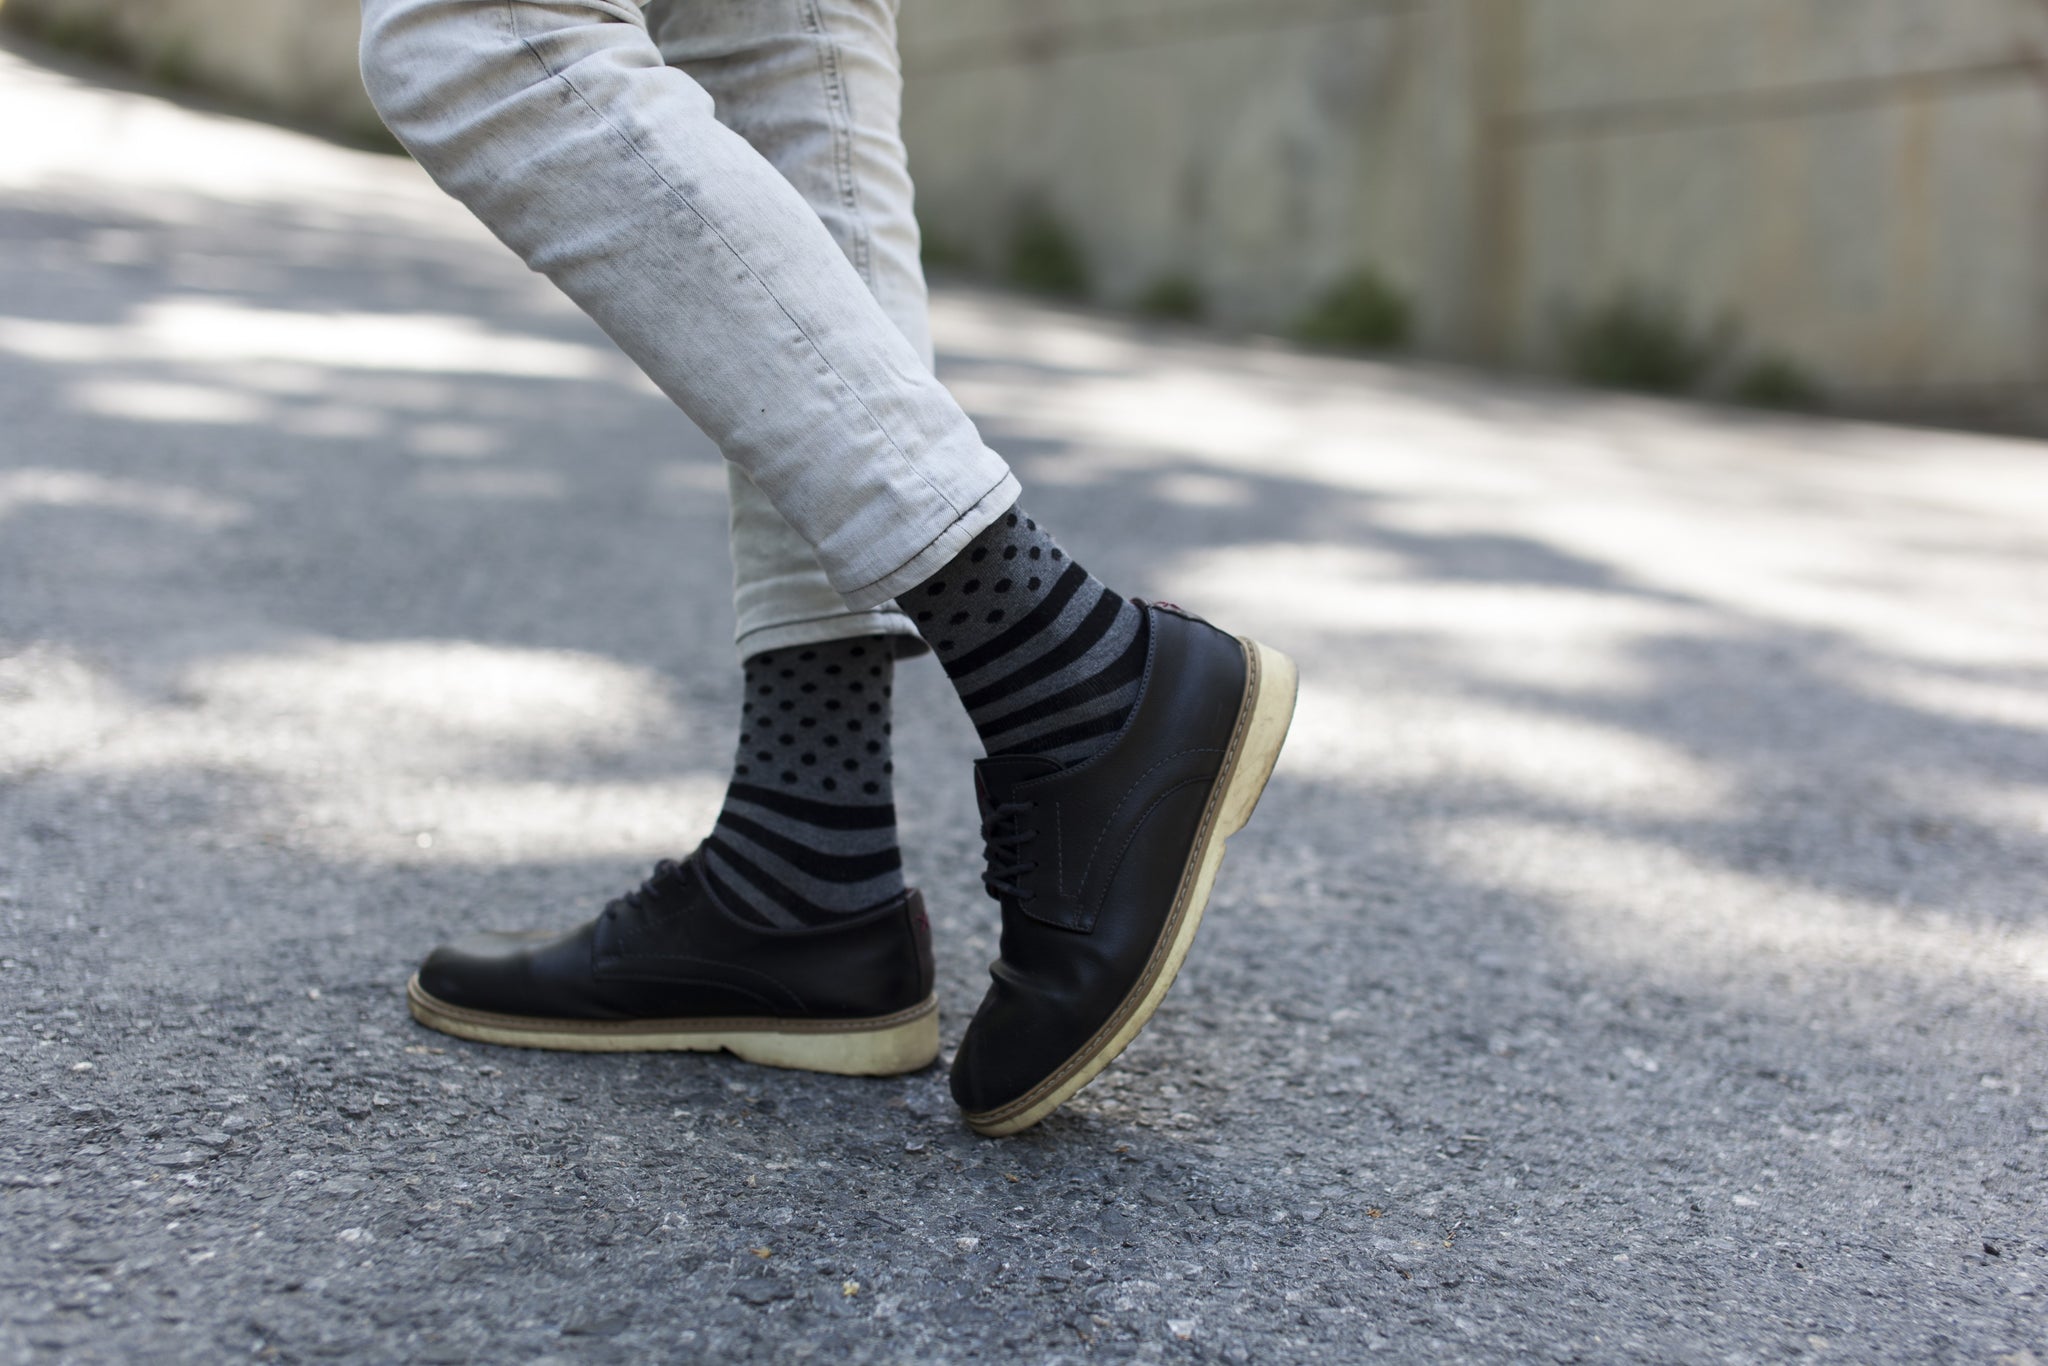 Men's Stone Dot Stripe Socks